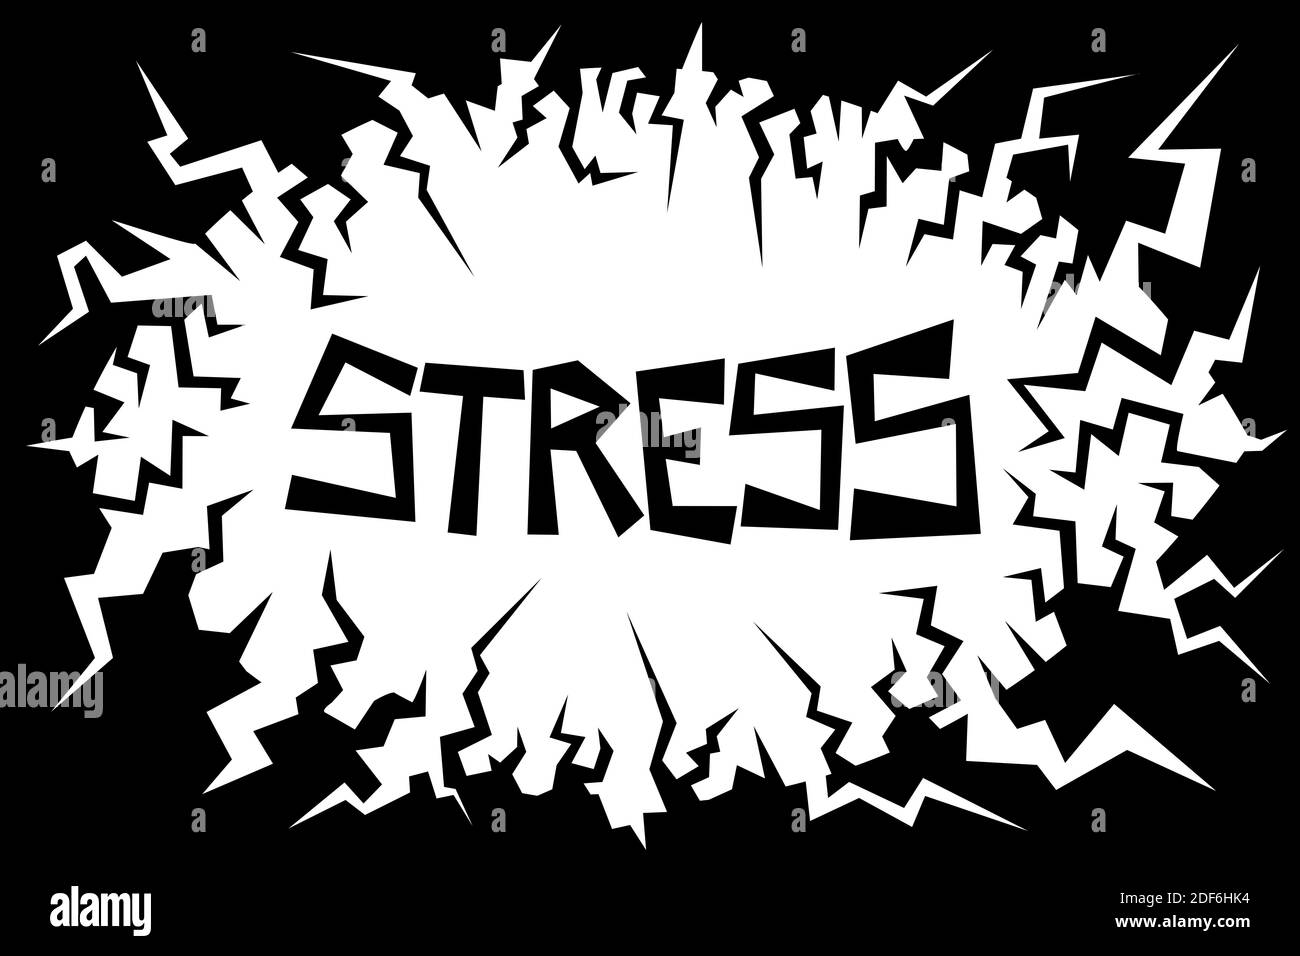 Negative Umwelt verursacht Stress - Geist und psychische Verfassung ist unter Druck - störend und unbesorgt schwächend. Vektorgrafik Stockfoto